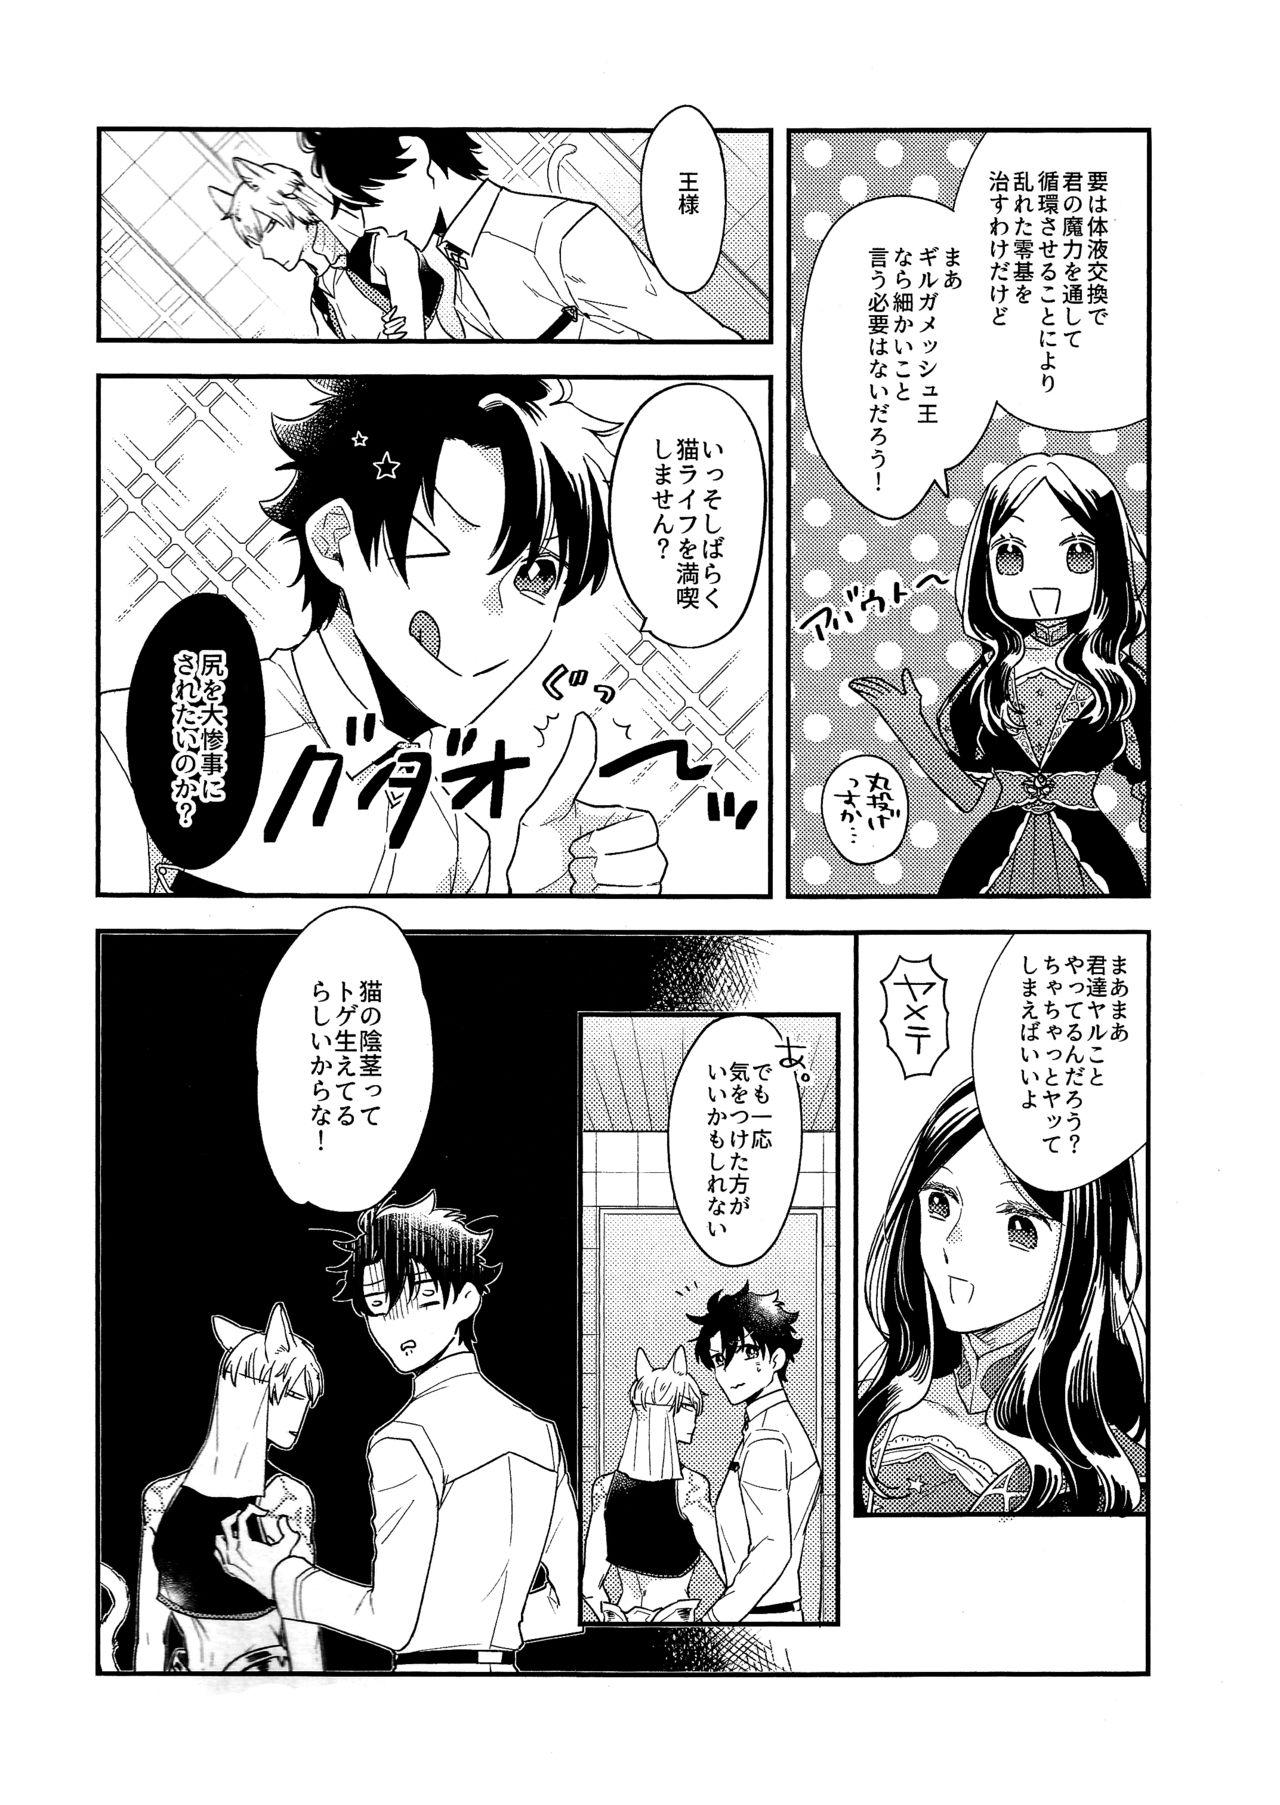 Gostosas Miwaku no o Neko-sama - Fate grand order Putita - Page 8